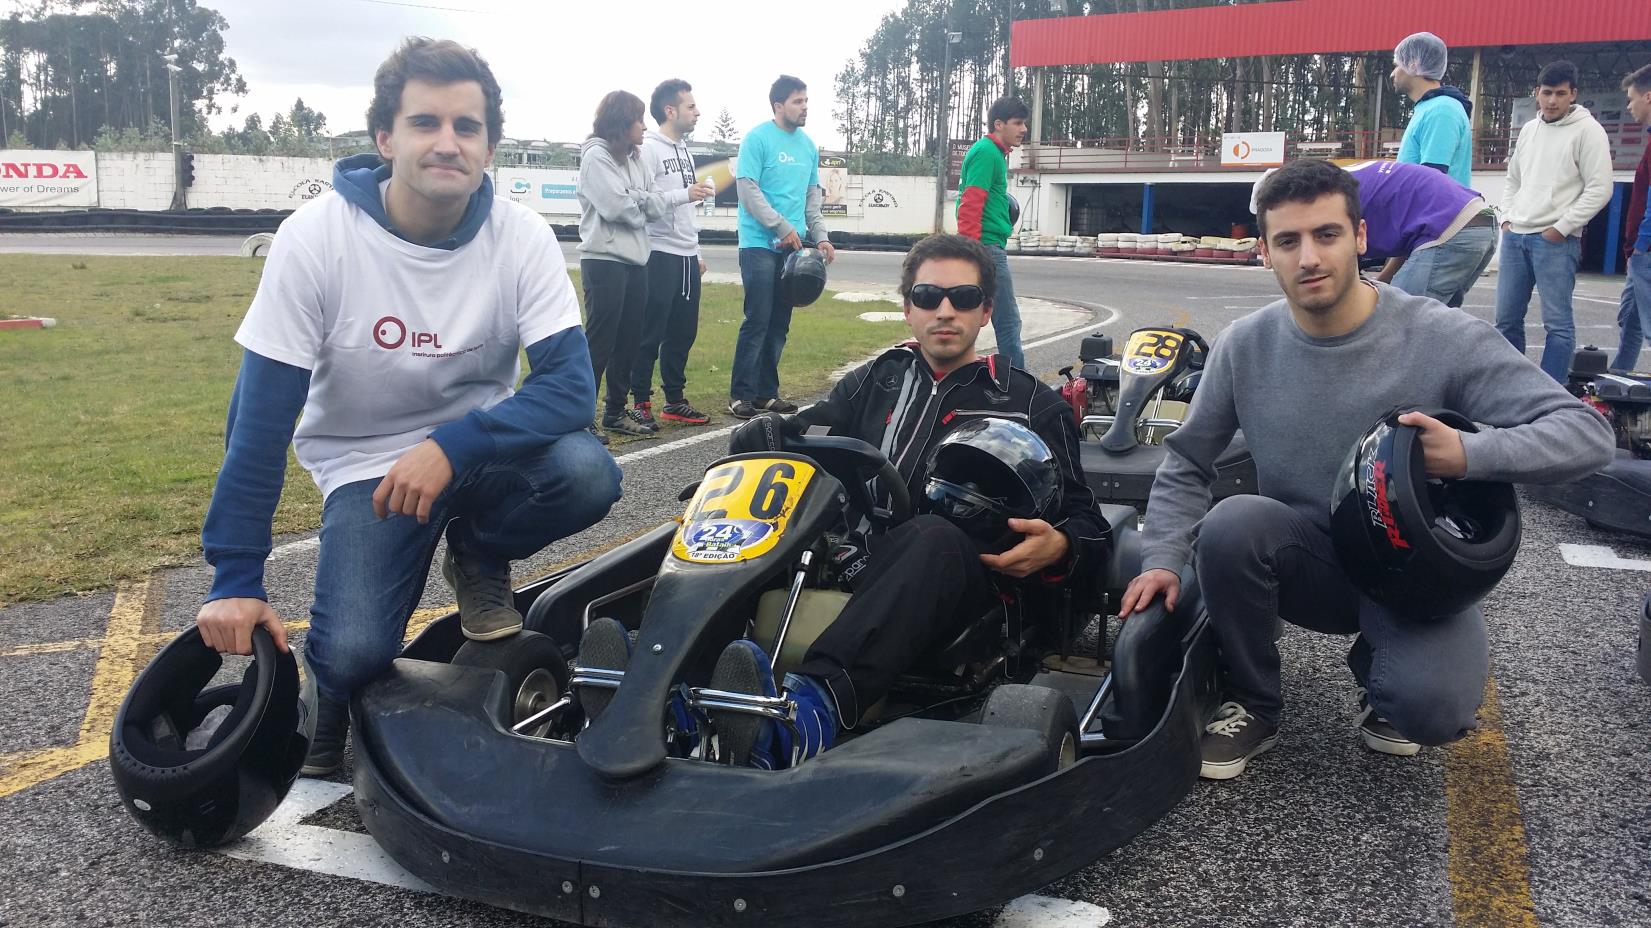 IV Troféu de Karting do IPLeiria32